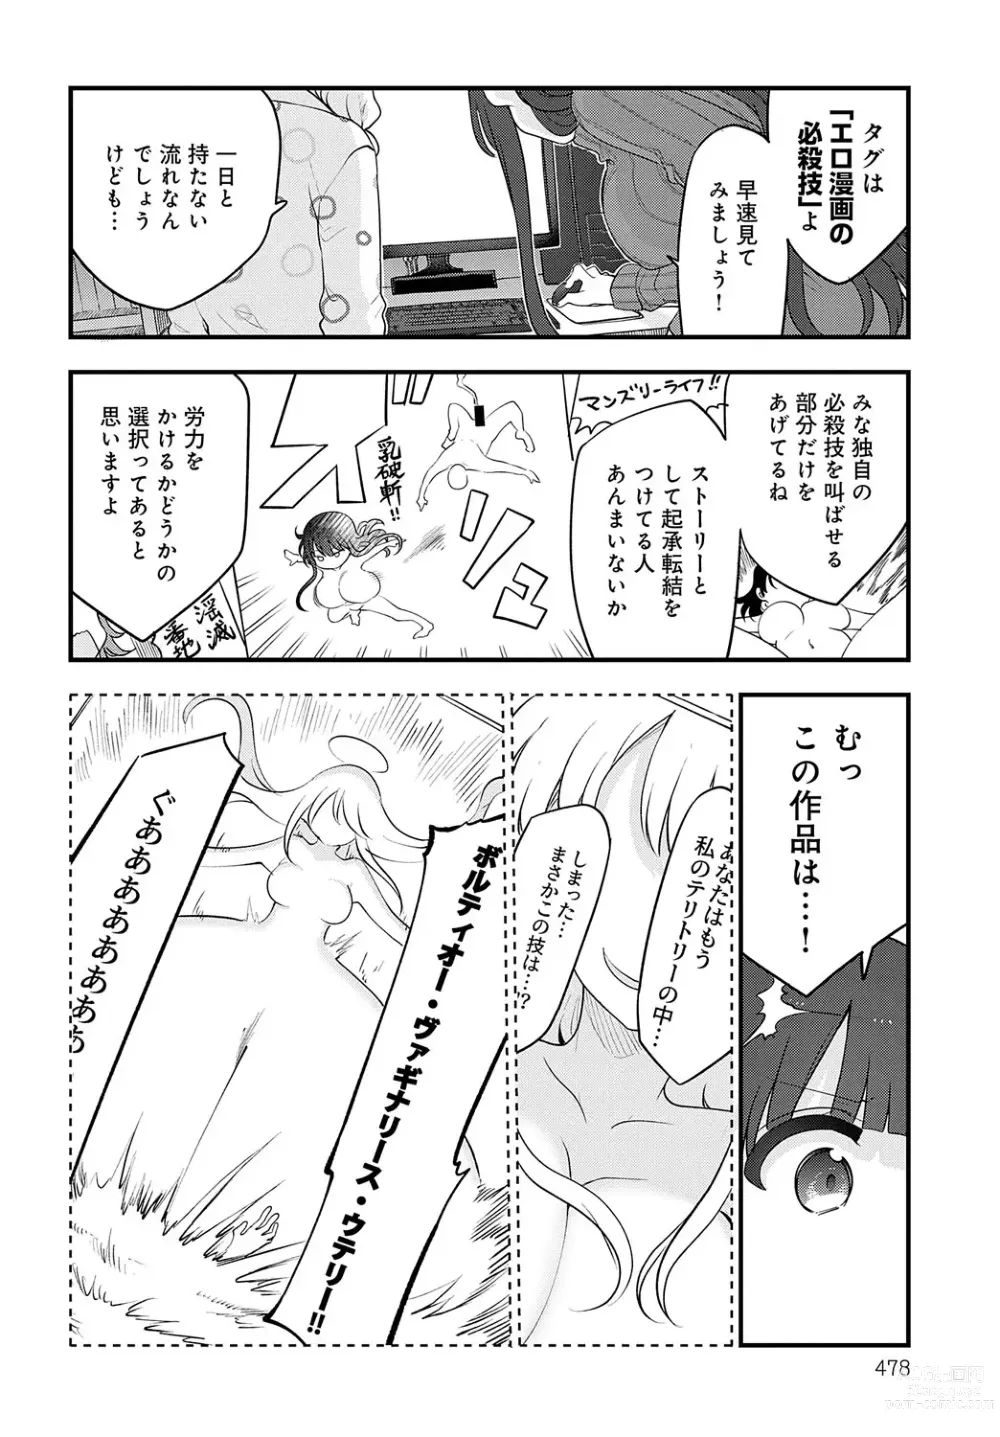 Page 477 of manga COMIC Anthurium 2023-07